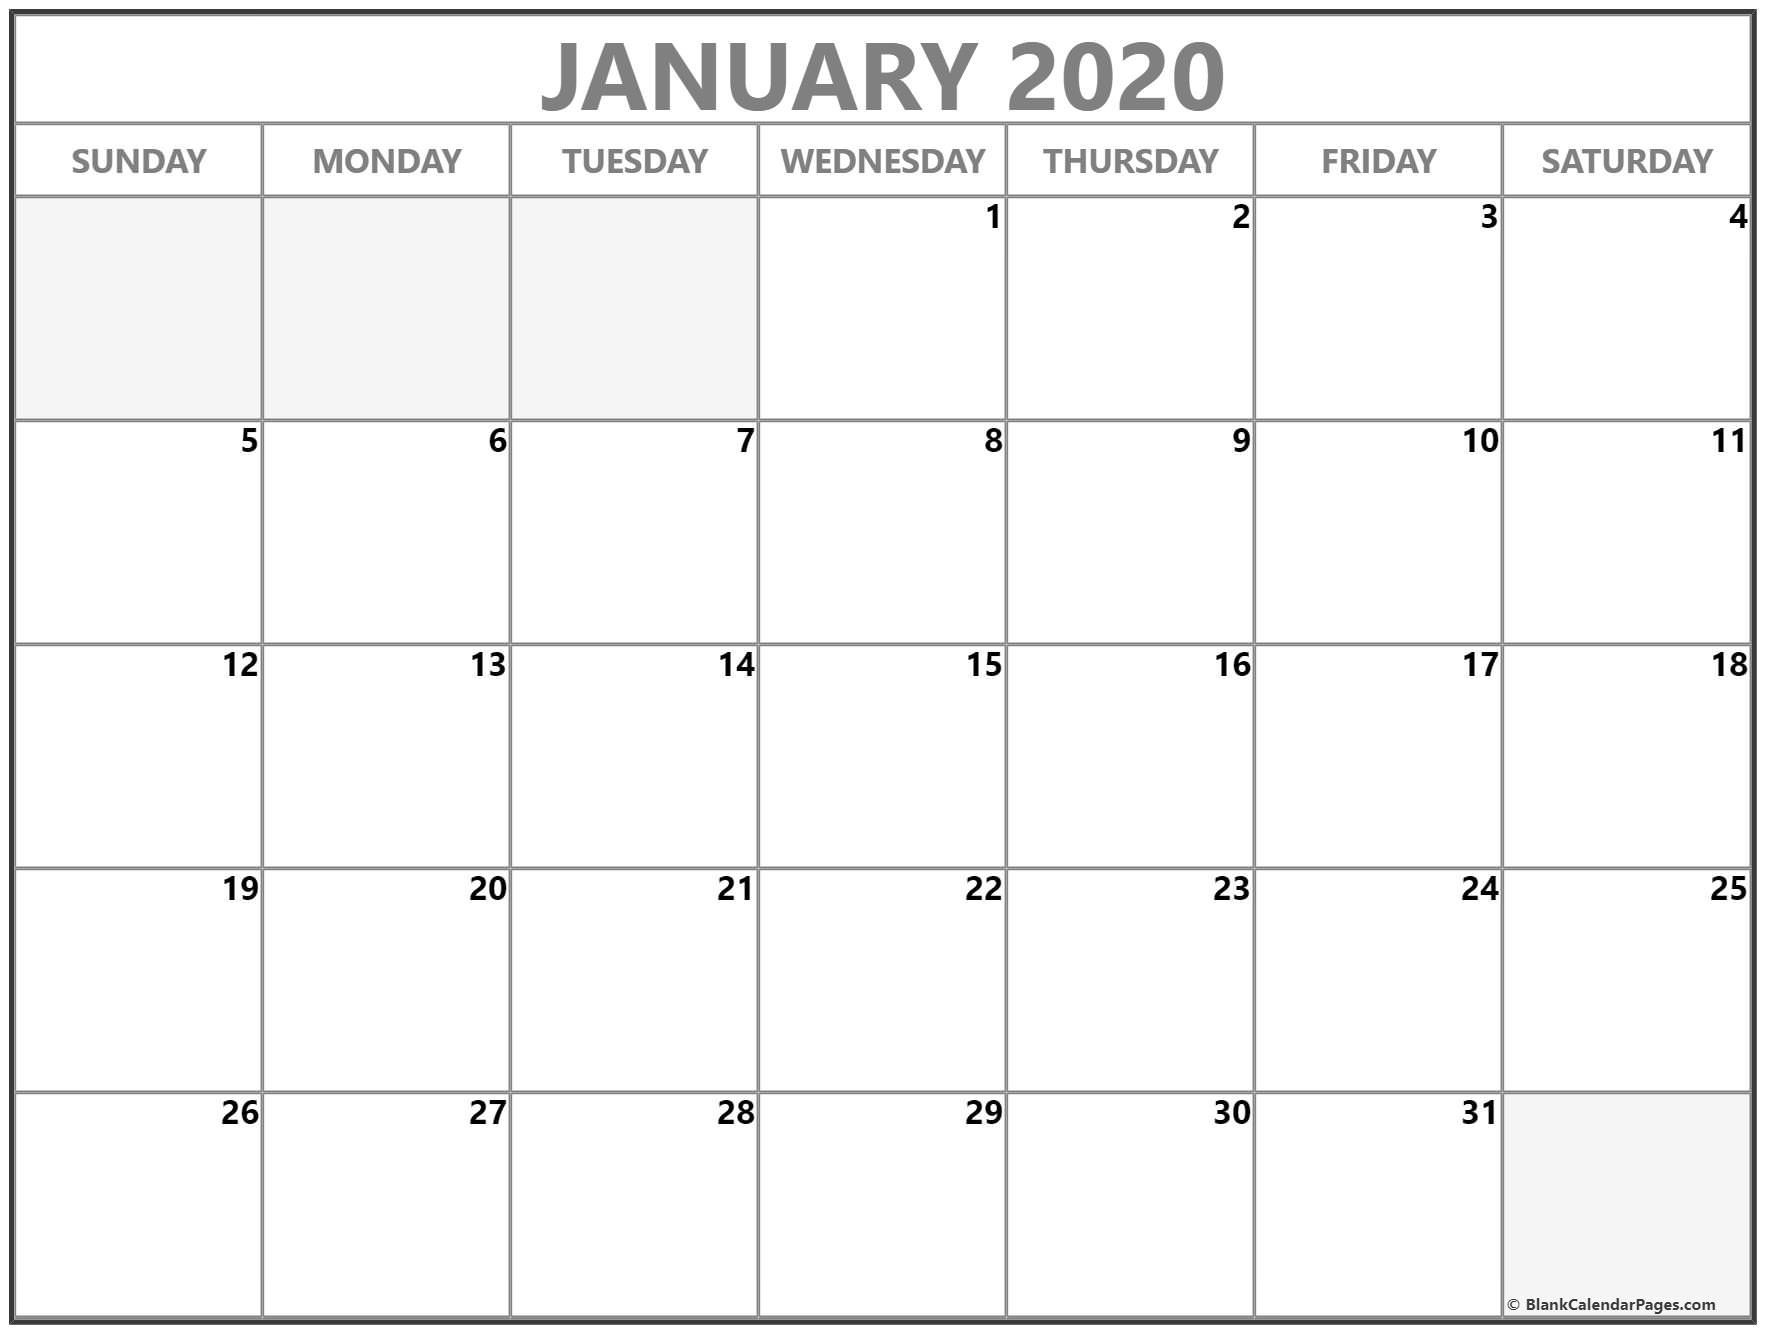 Exceptional Blank Calendar Template 2020 No Weekends Calendar Template No Dates